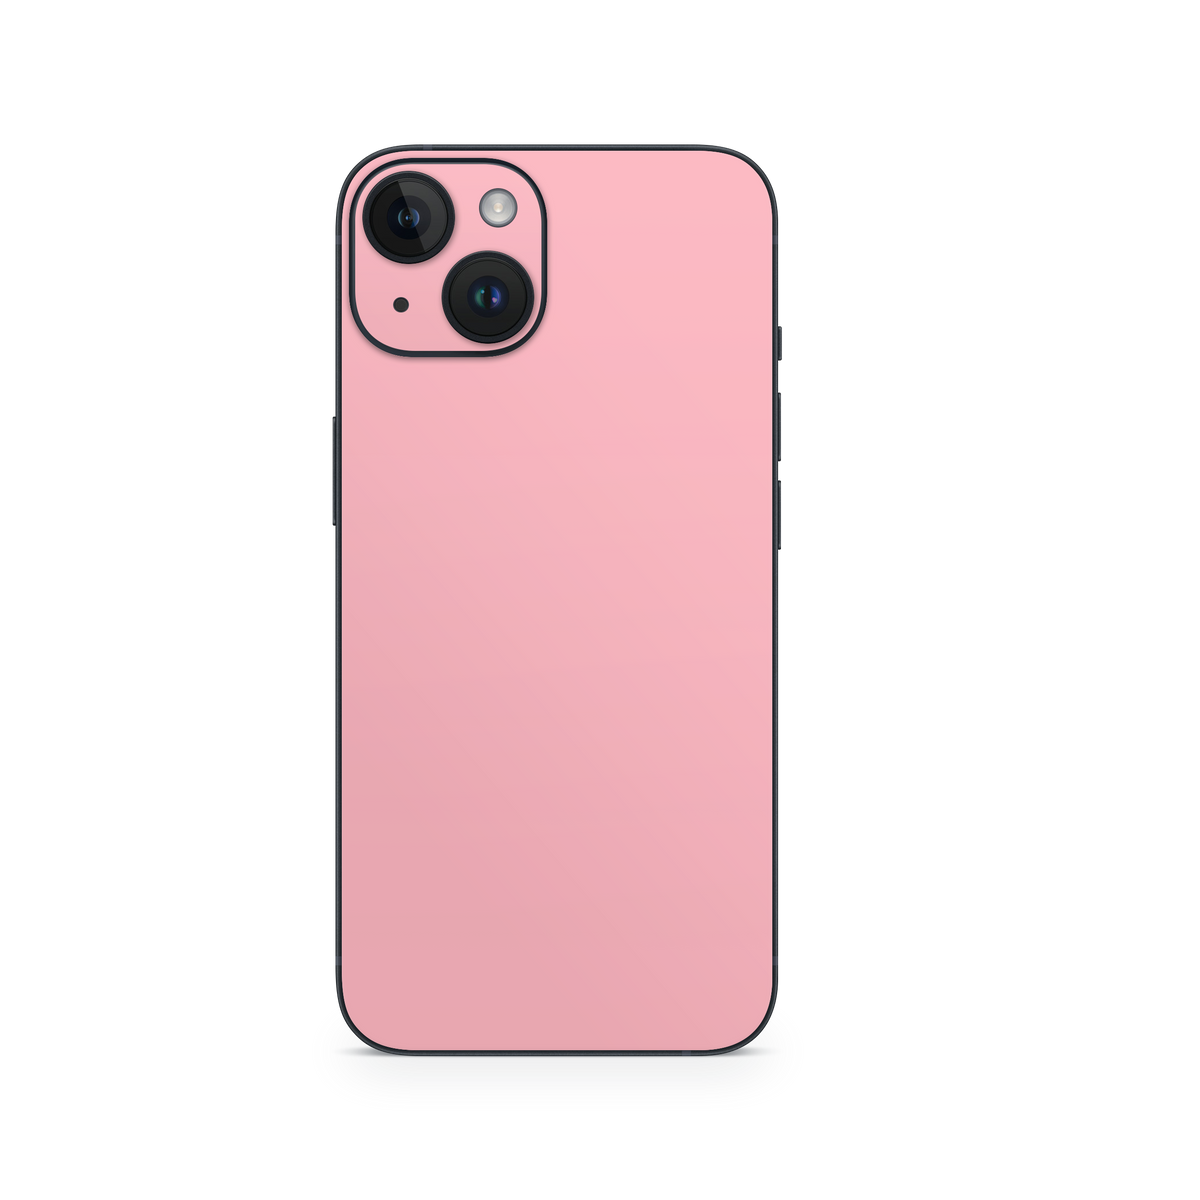 Apple iPhone Pastel Pink Skin